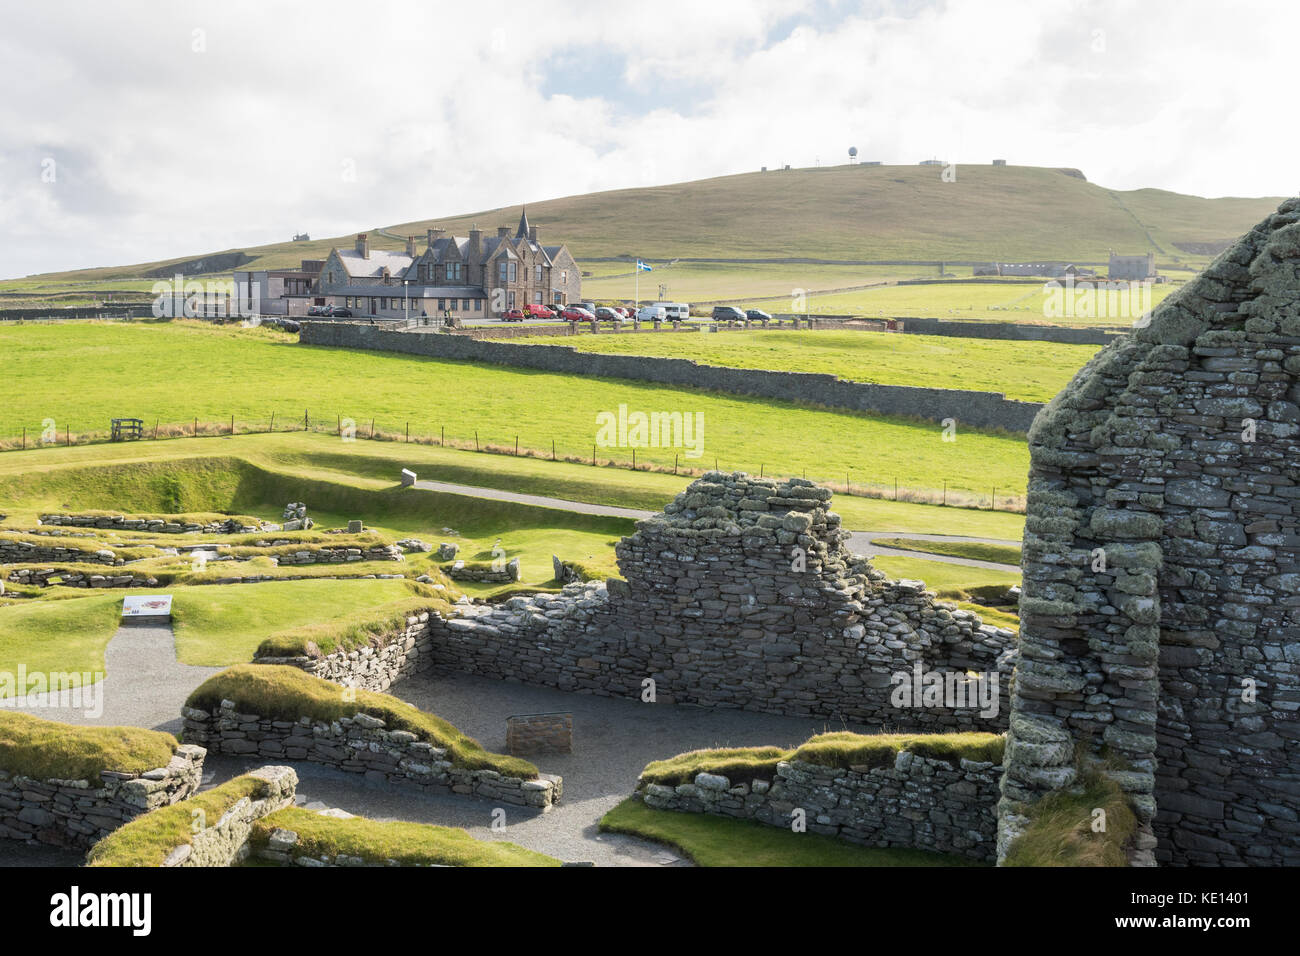 Hôtel de Sumburgh vu du site archéologique de Jarlshof, Sumburgh, Virkie, Shetland, Écosse,ROYAUME-UNI Banque D'Images